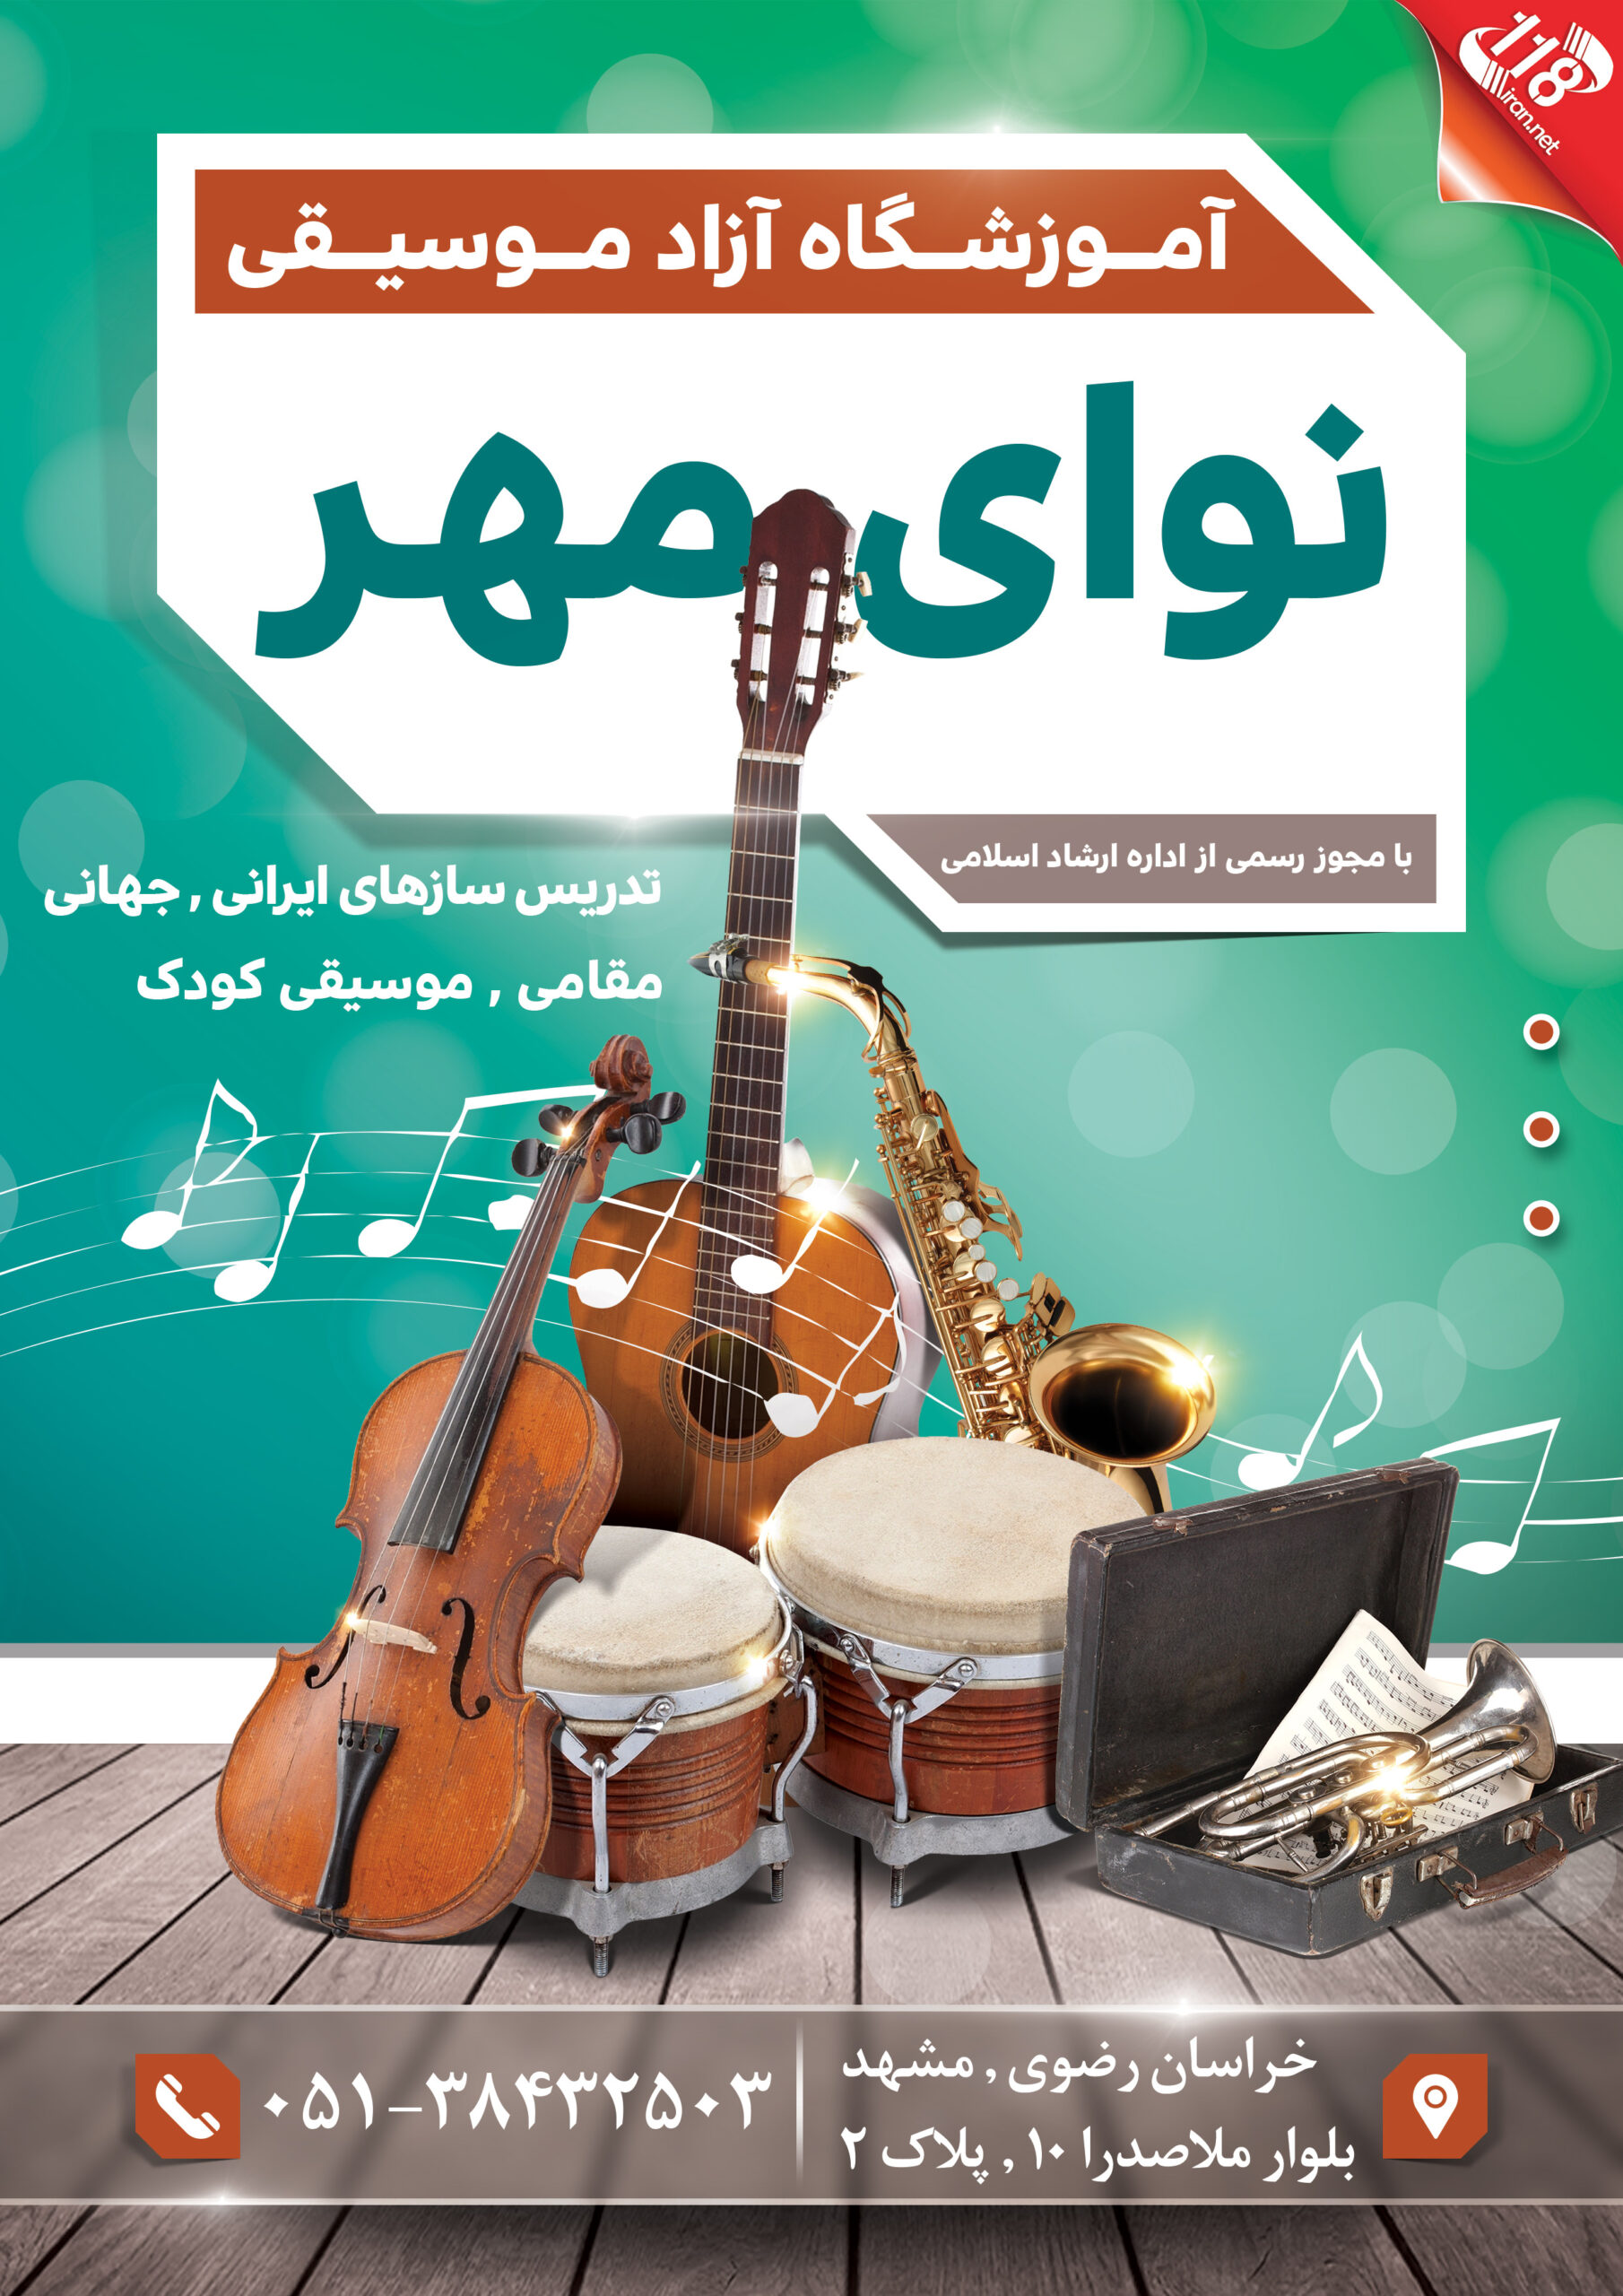  آموزشگاه موسیقی نوای مهر در مشهد 